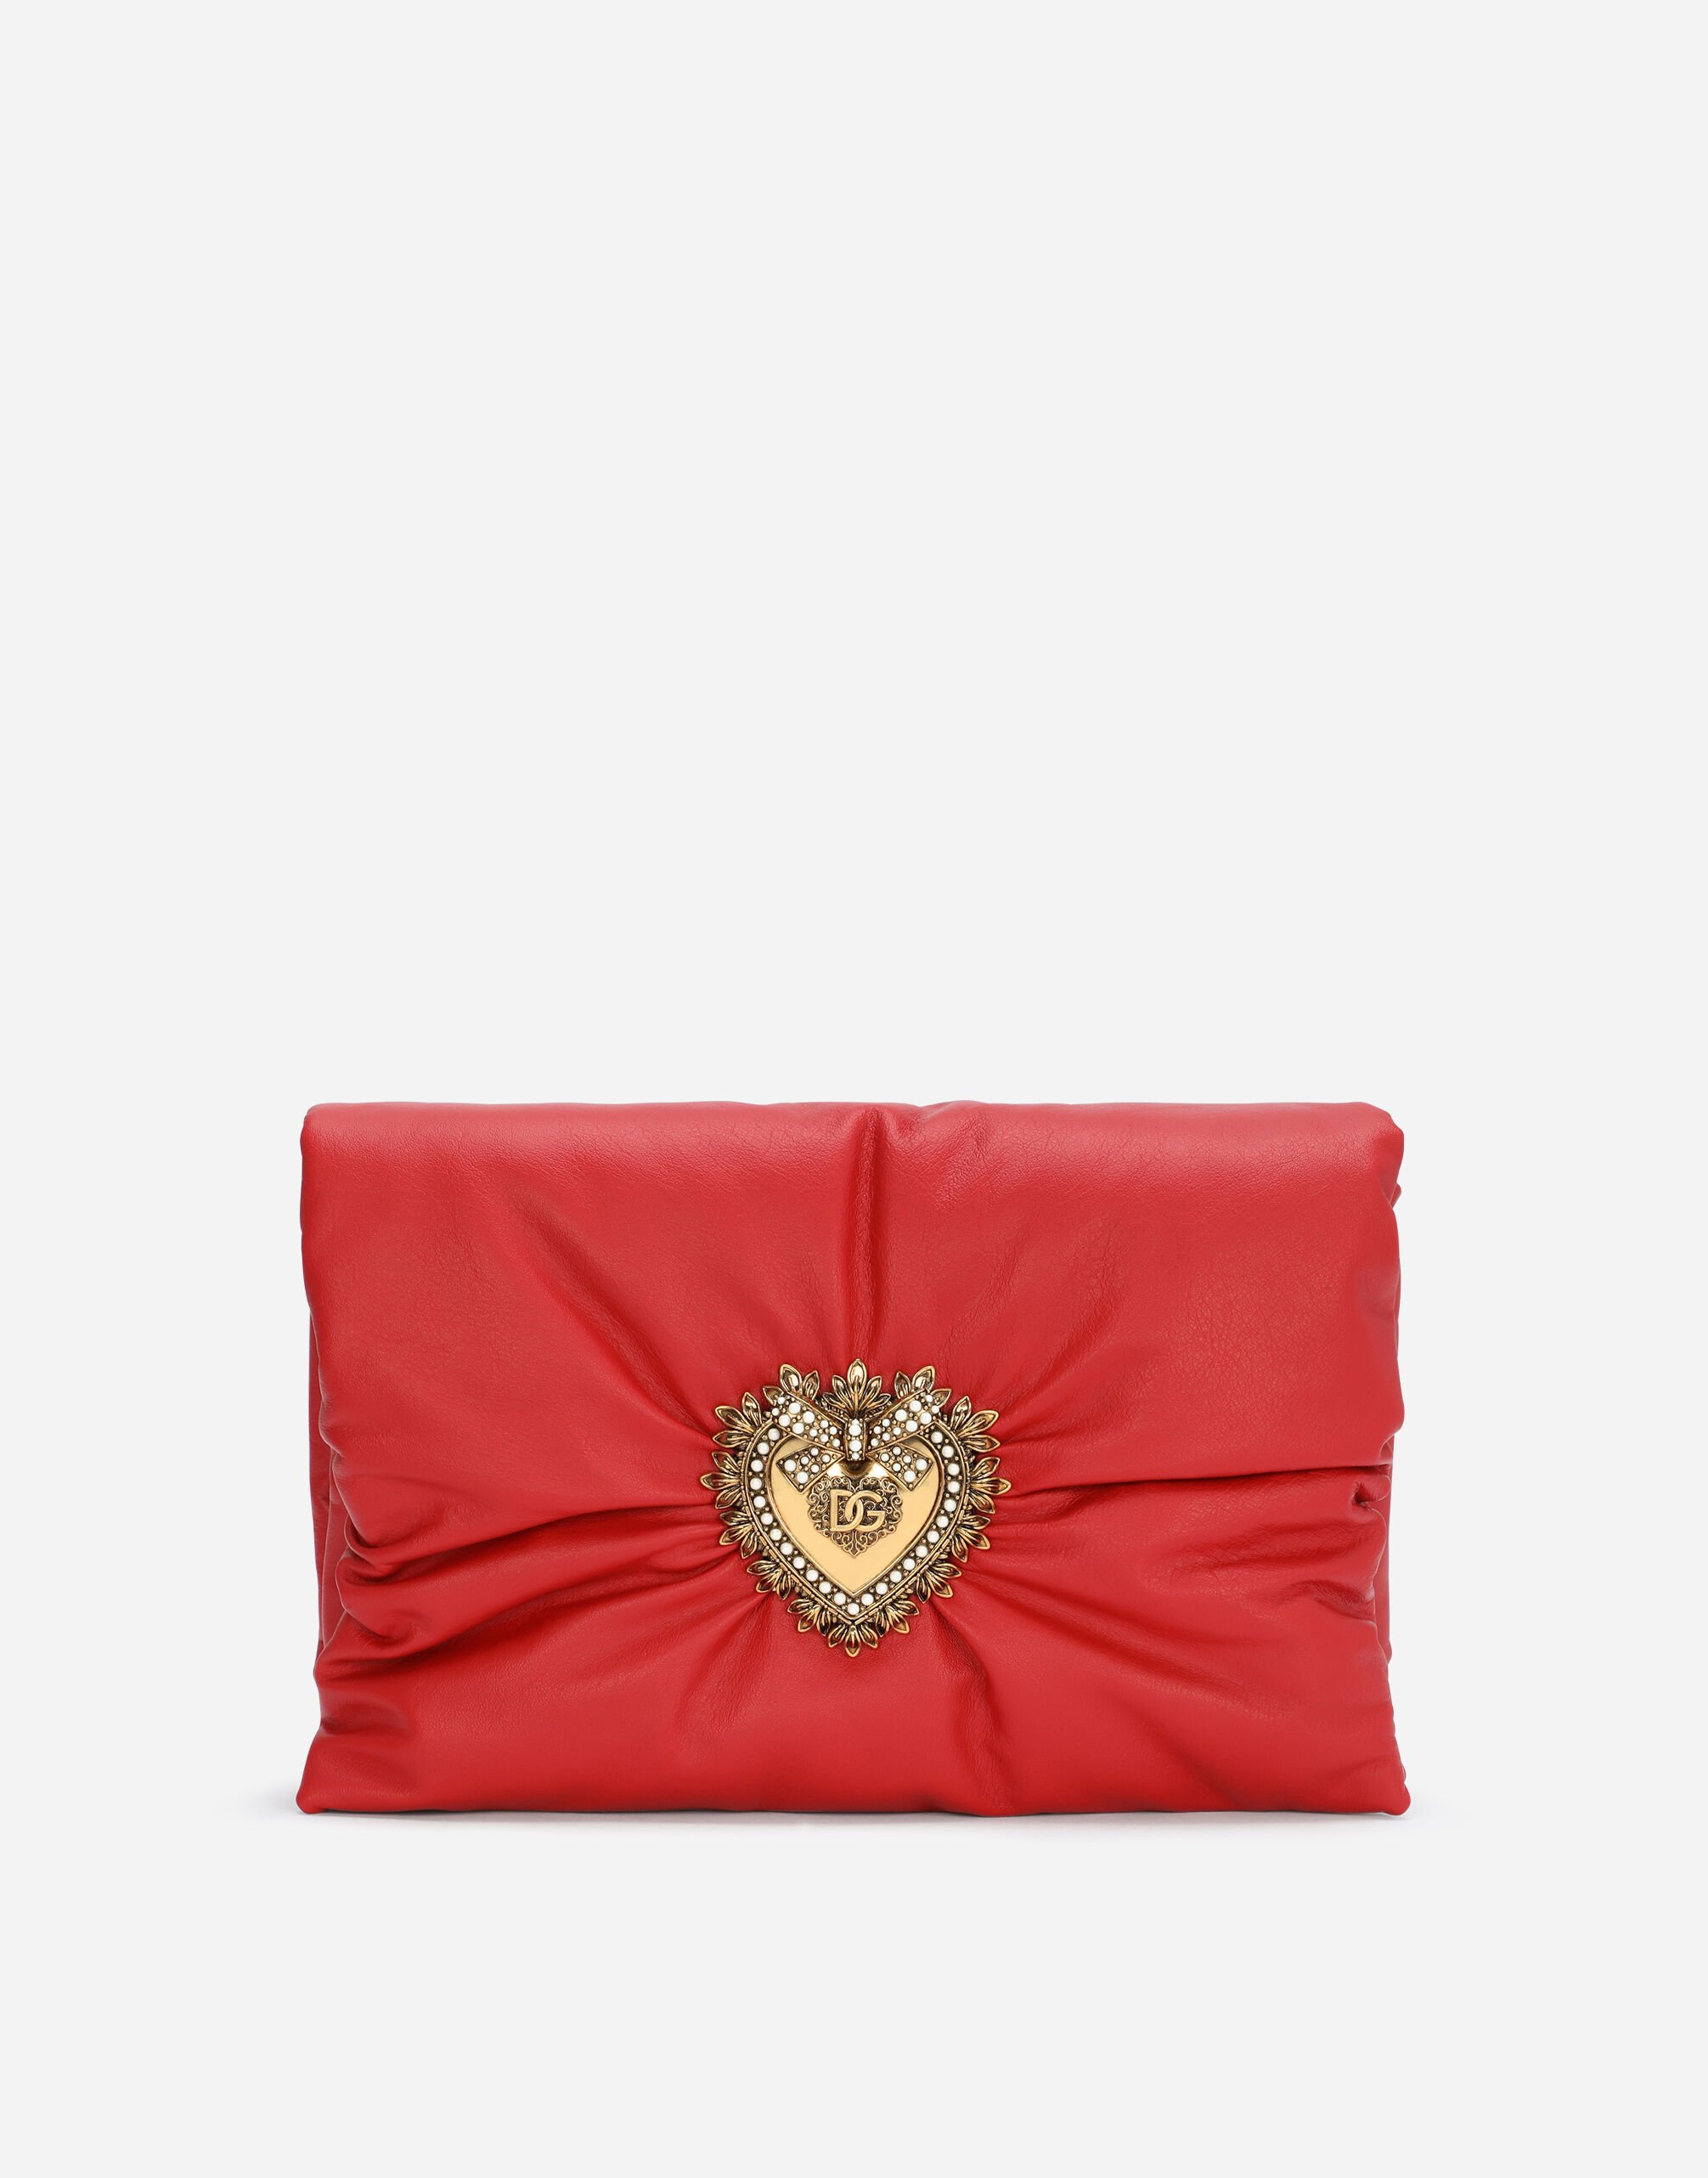 Dolce & Gabbana Medium calfskin Devotion Soft bag Red BB6651AV967